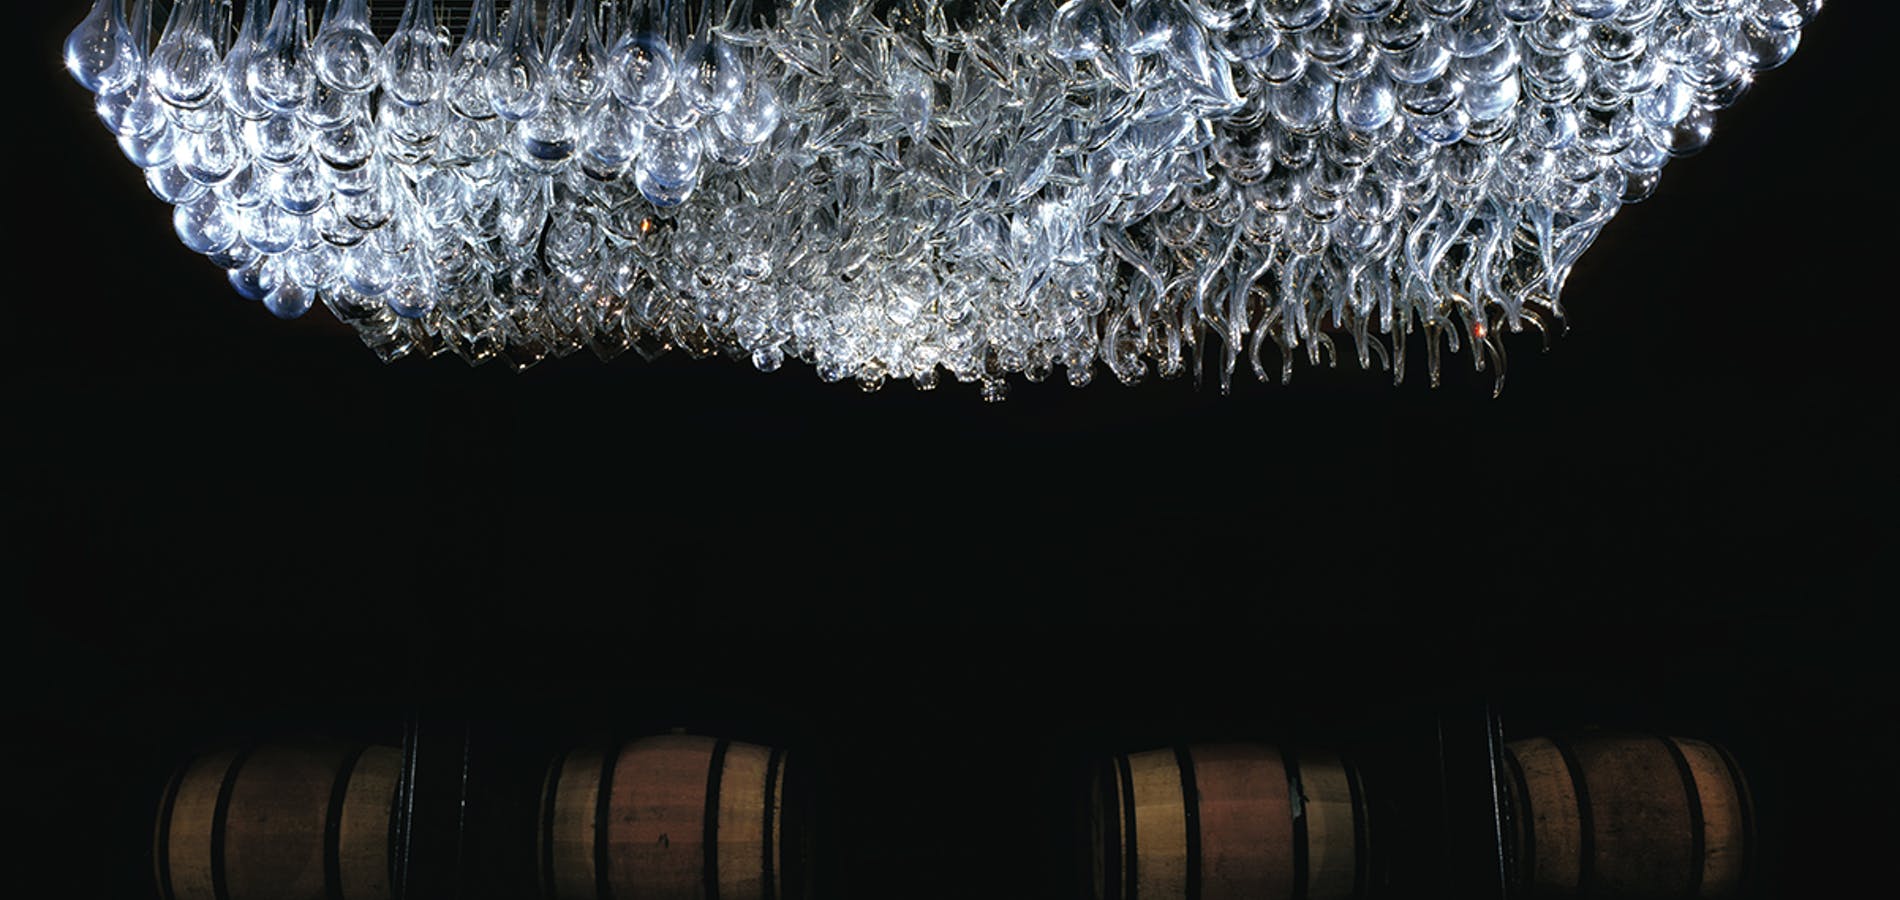 Os cristais sob os barris de vinho (Foto: divulgação/site Castello)